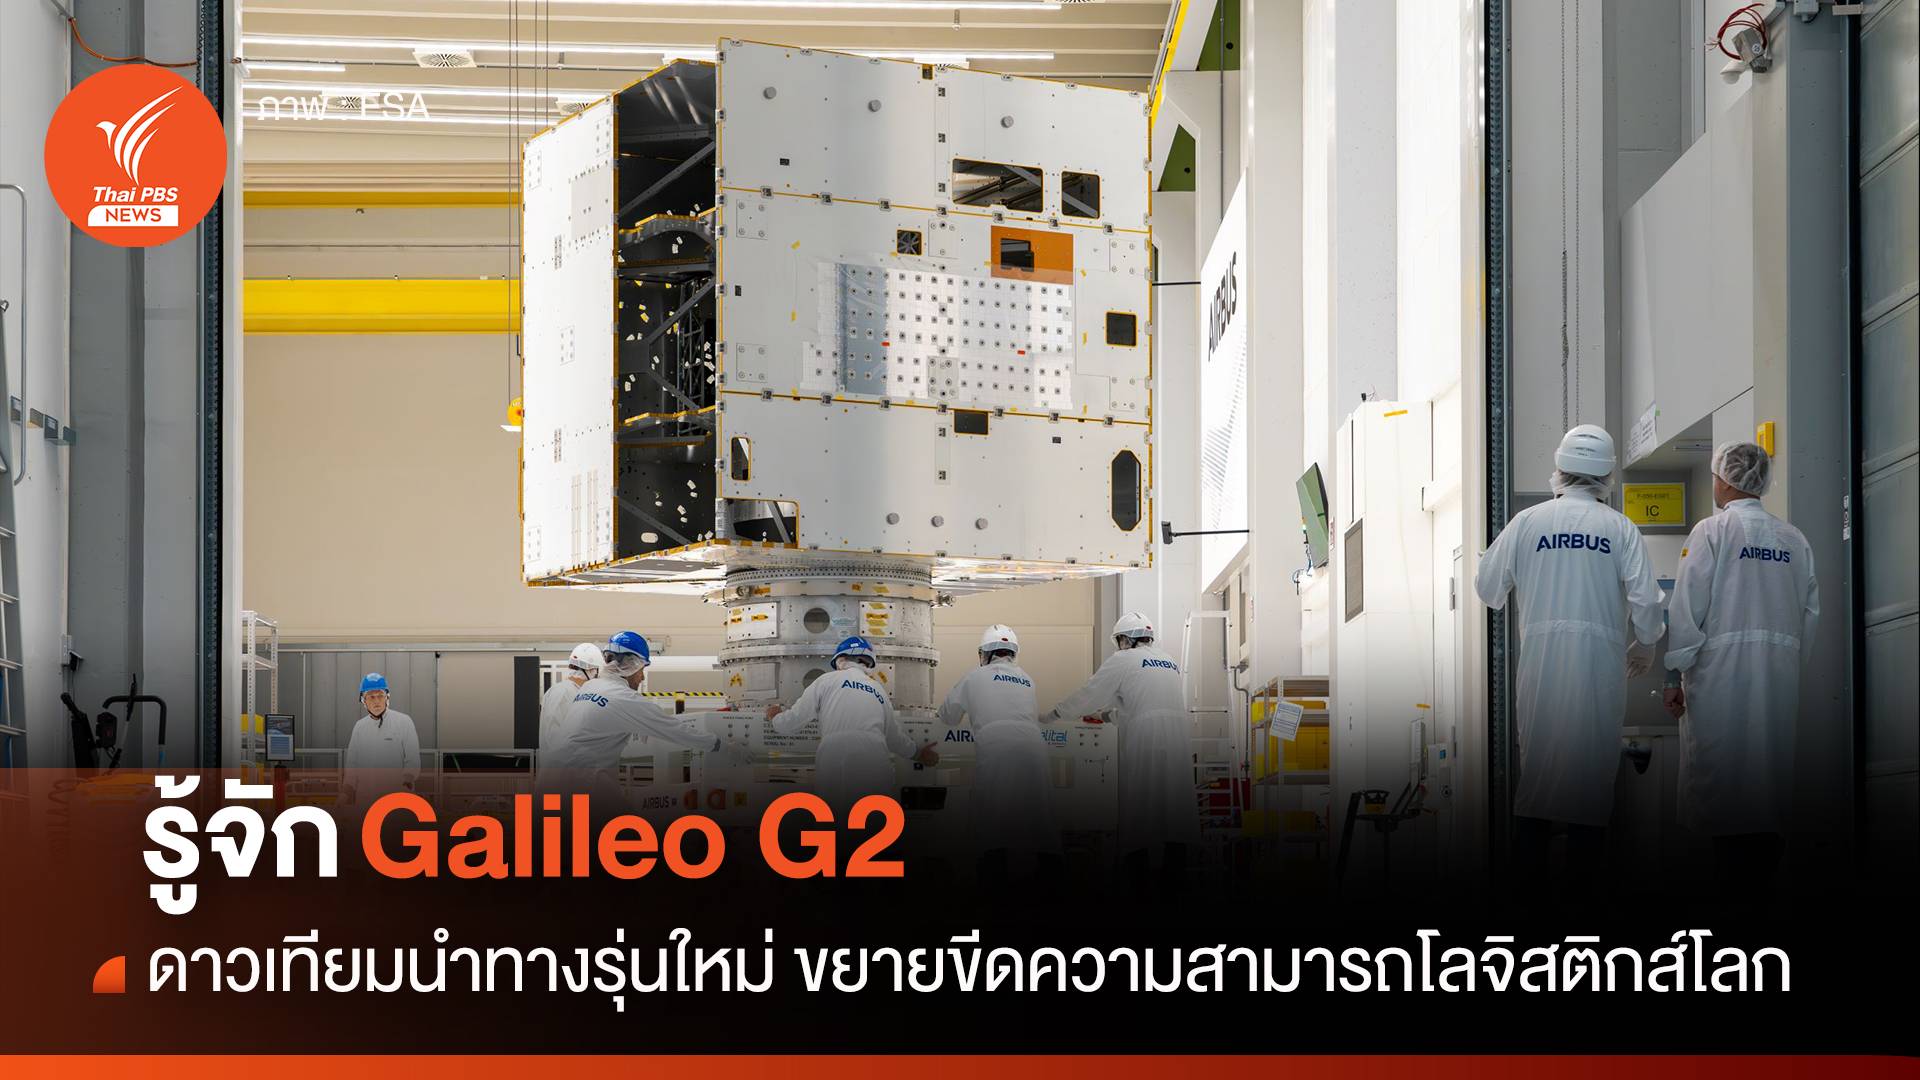 รู้จัก Galileo G2 ดาวเทียมนำทางรุ่นใหม่ ขยายขีดความสามารถโลจิสติกส์โลก